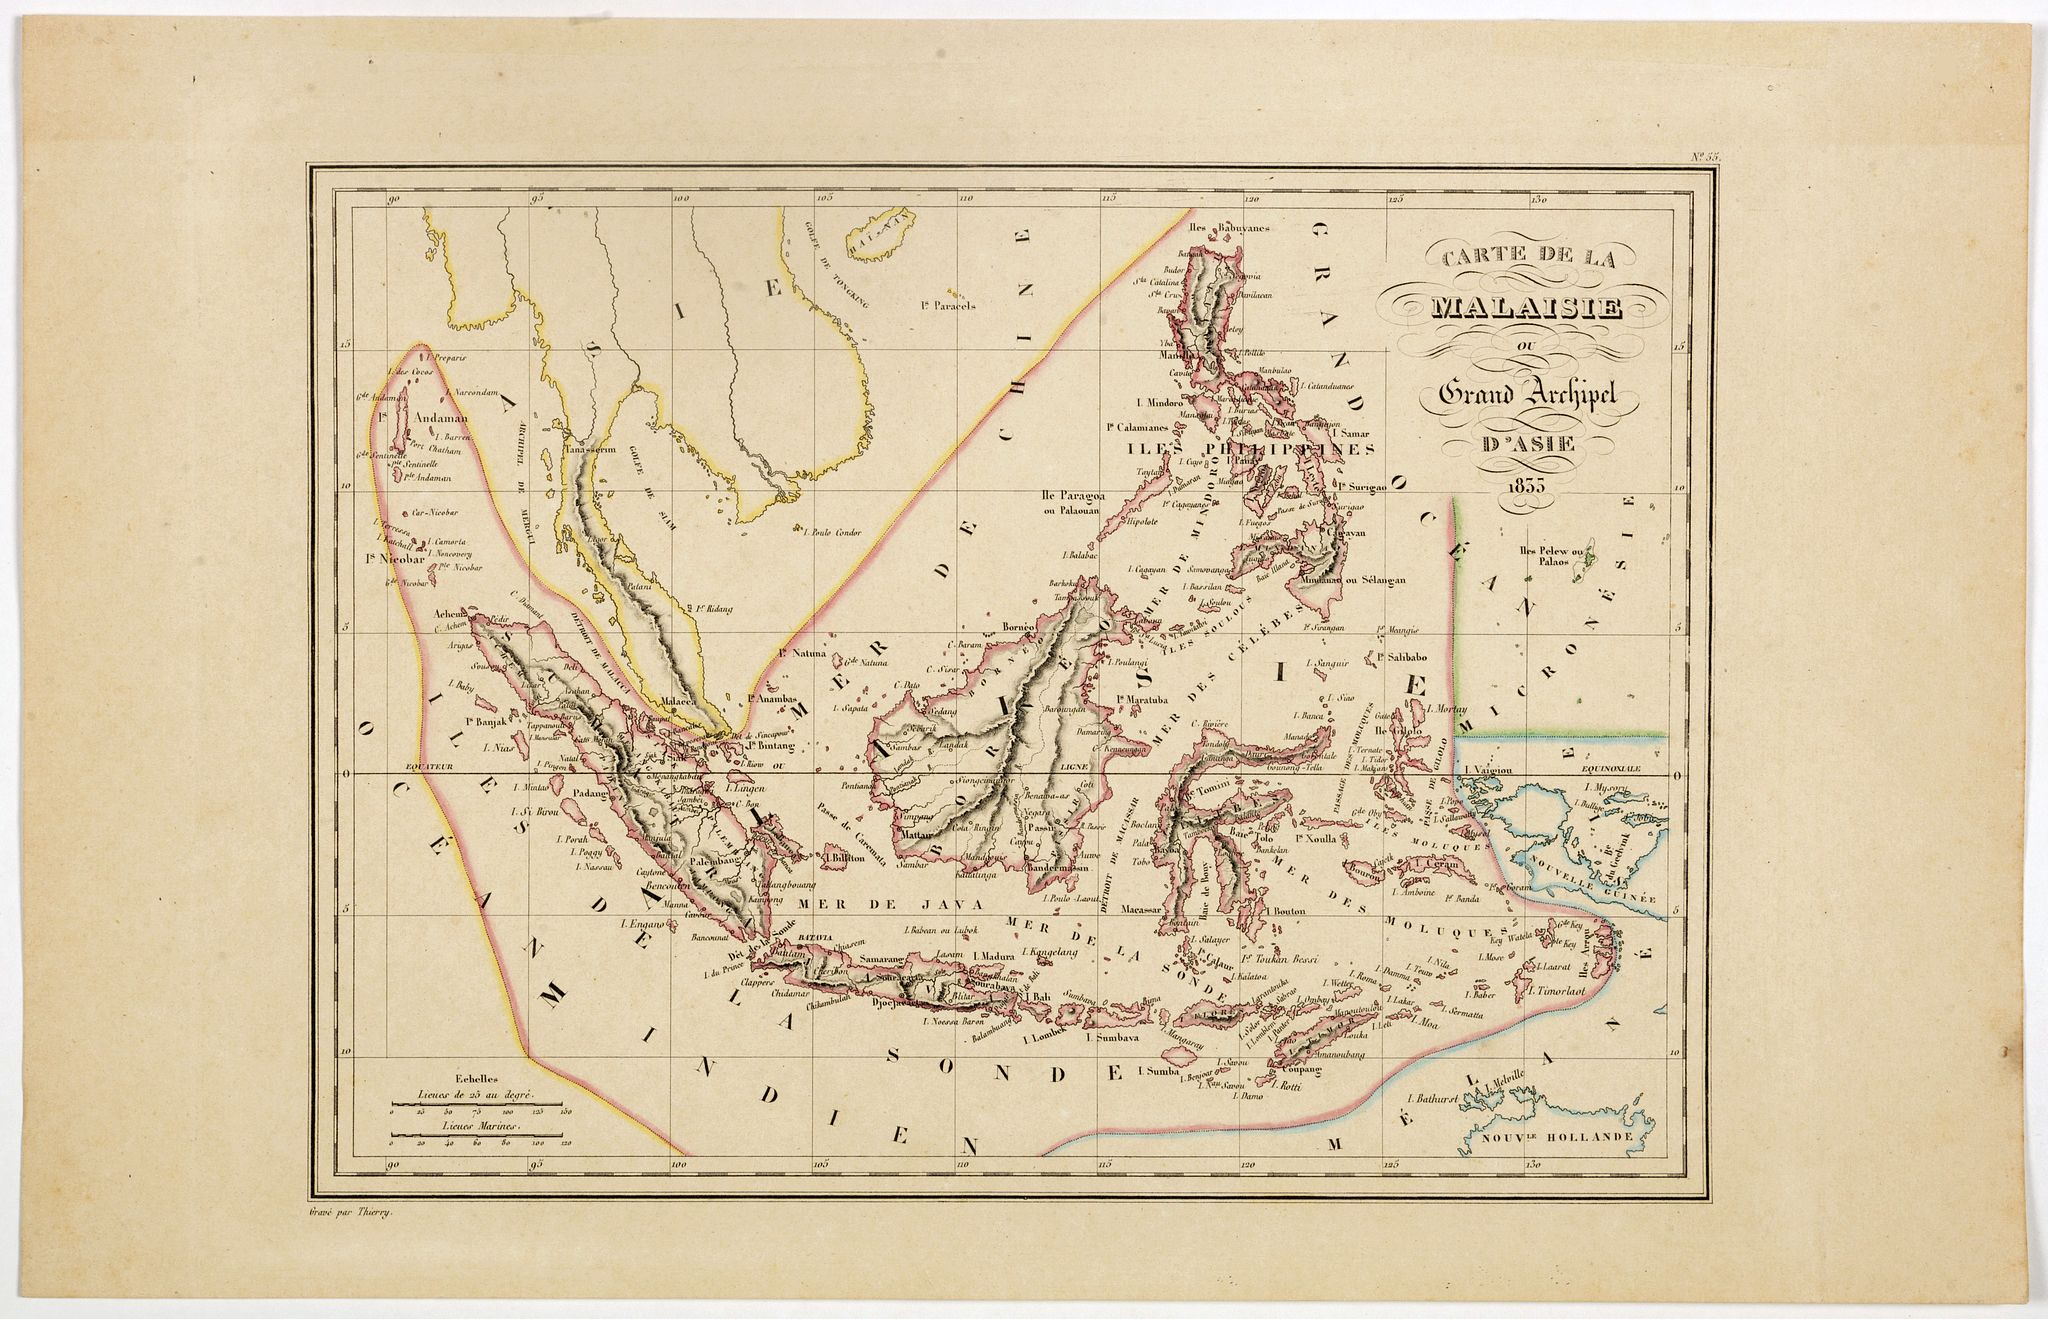 Carte de la Malaisie ou Grand archipel d'Asie